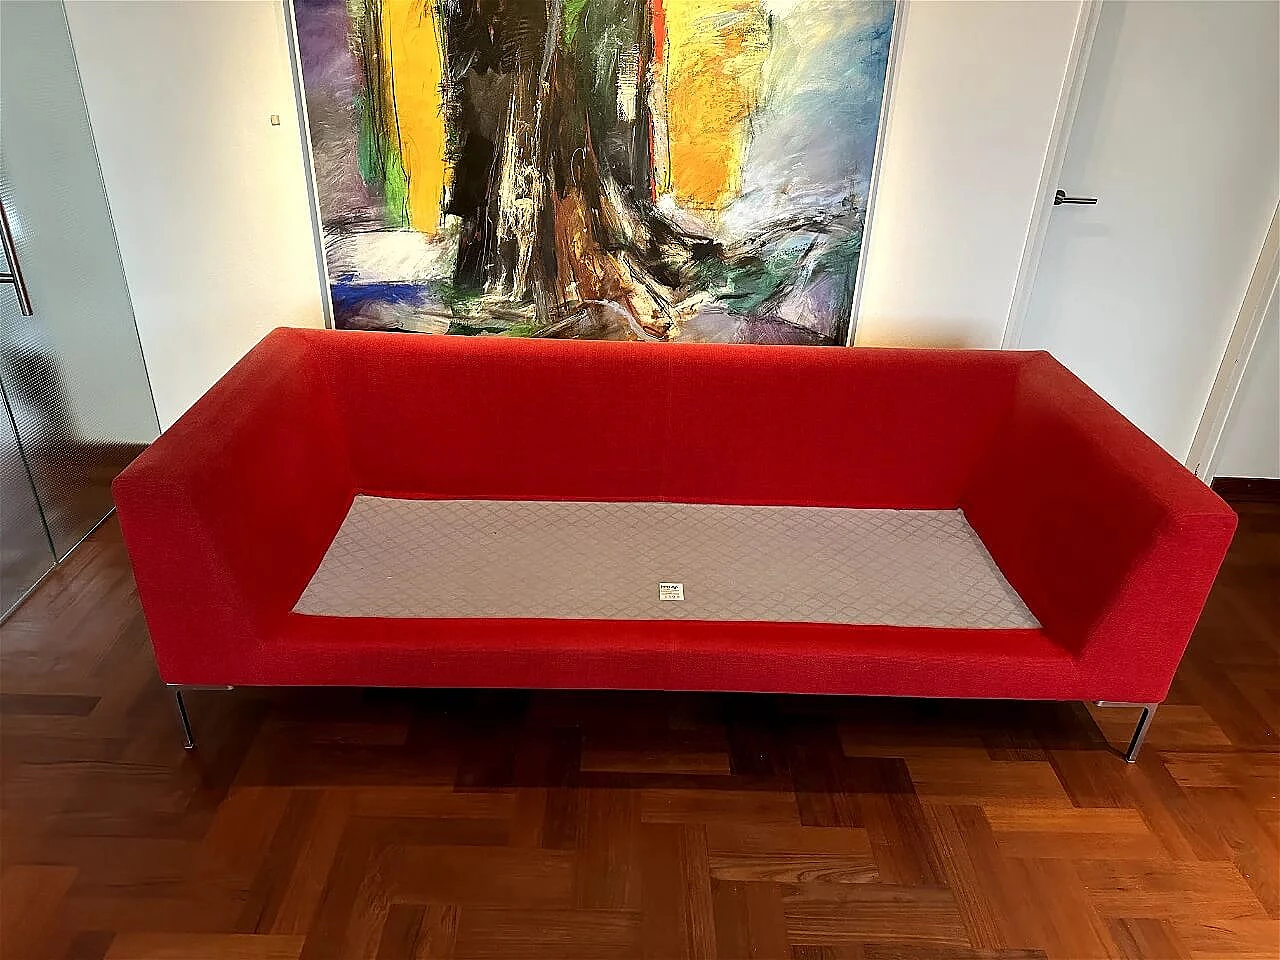 CH228 Charles sofa in red Maxalto-Cat cotton by Antonio Citterio for B&B Italia 7